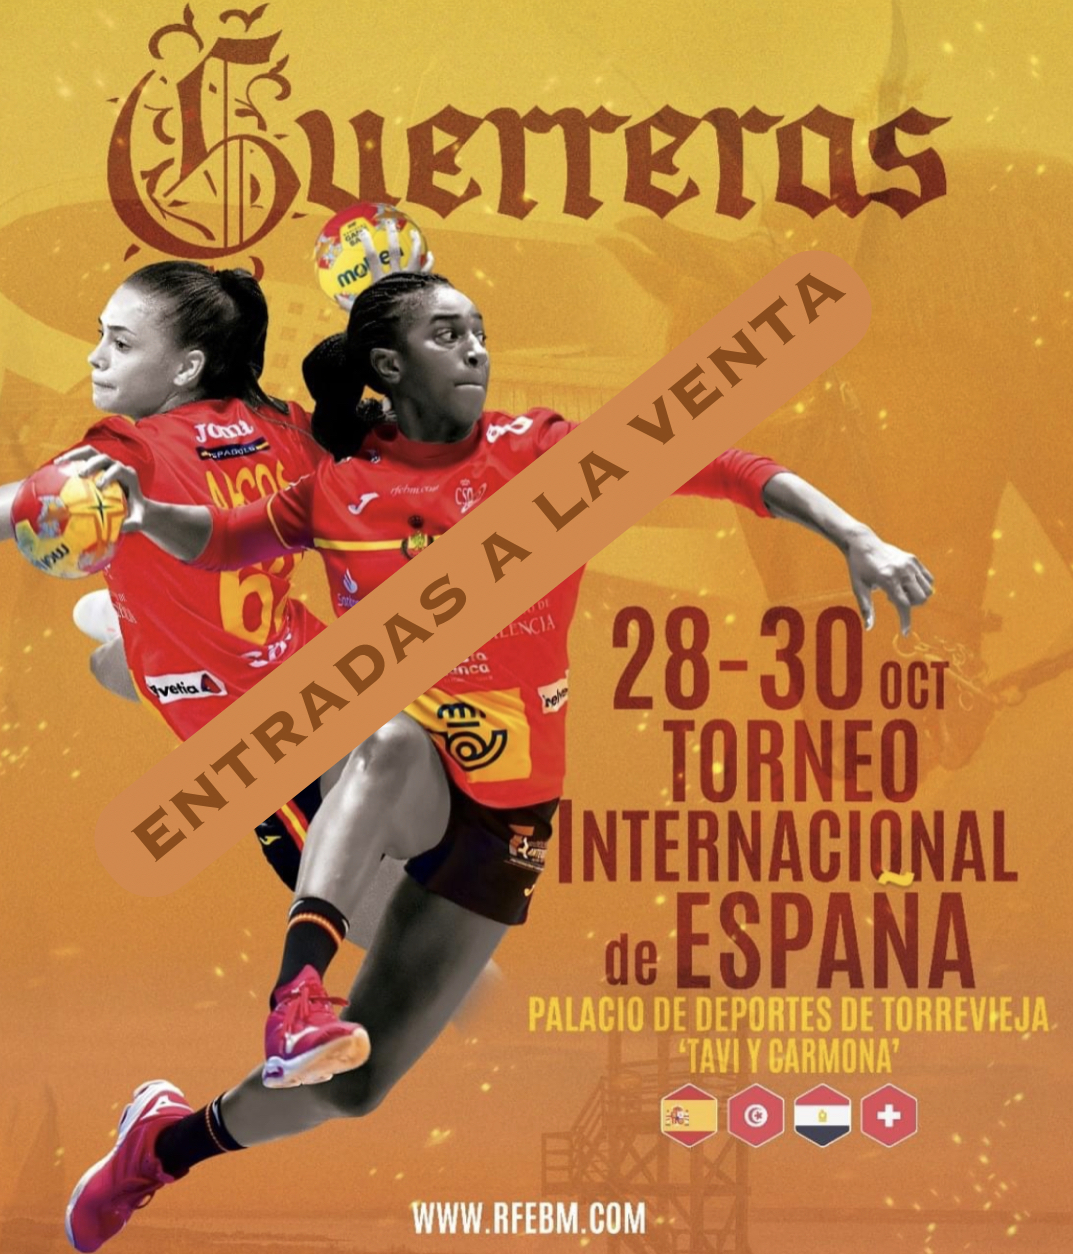 (Español) 🎟Entradas a la venta a partir de hoy a las 13:00h, para el Torneo Internacional de España